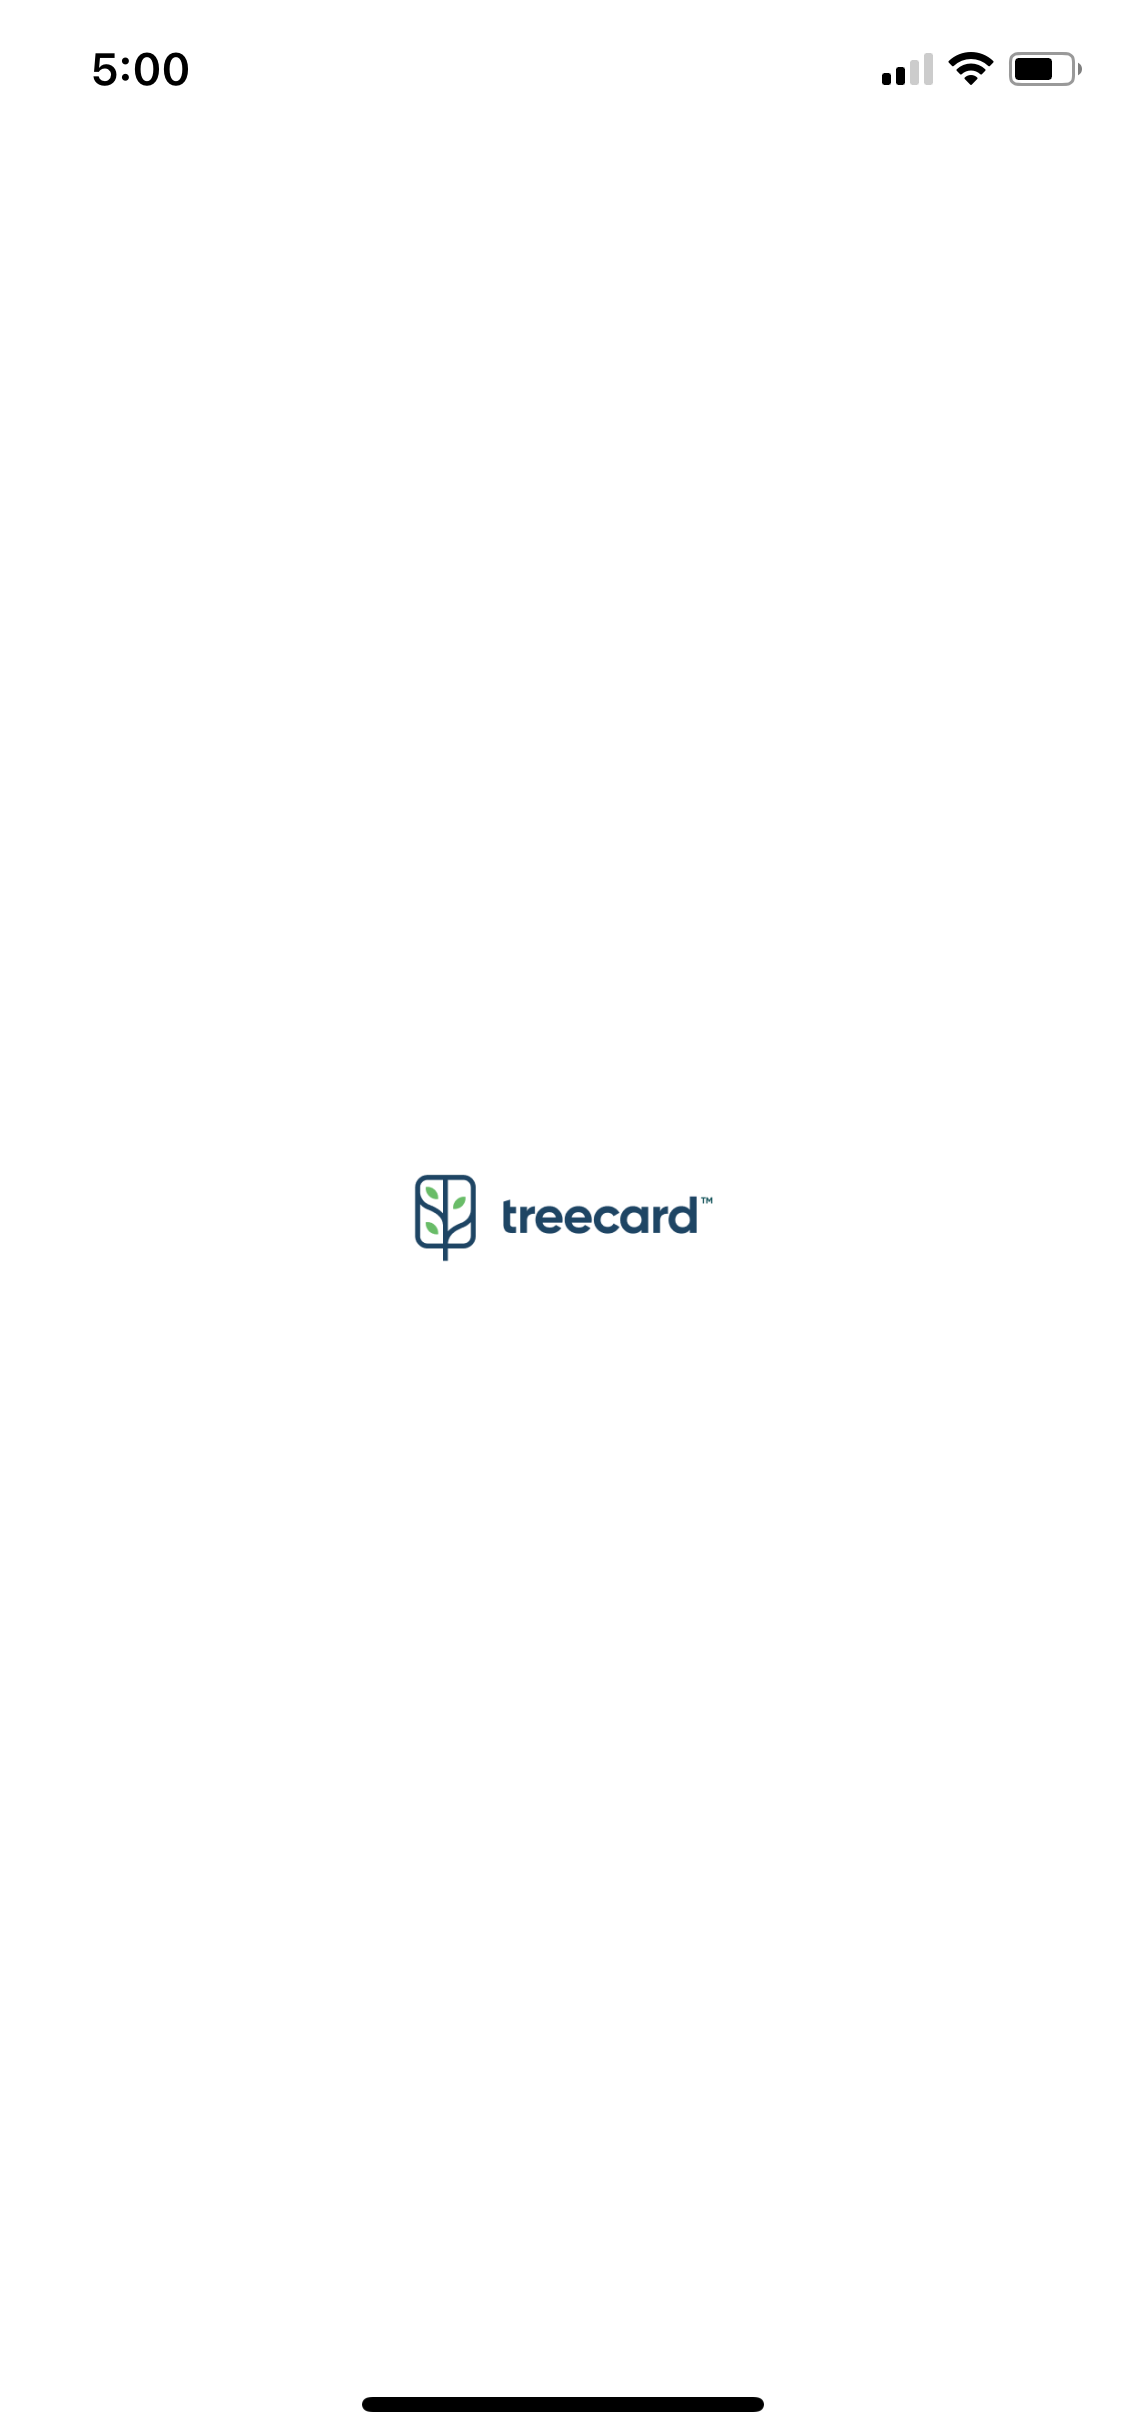 treecard home page